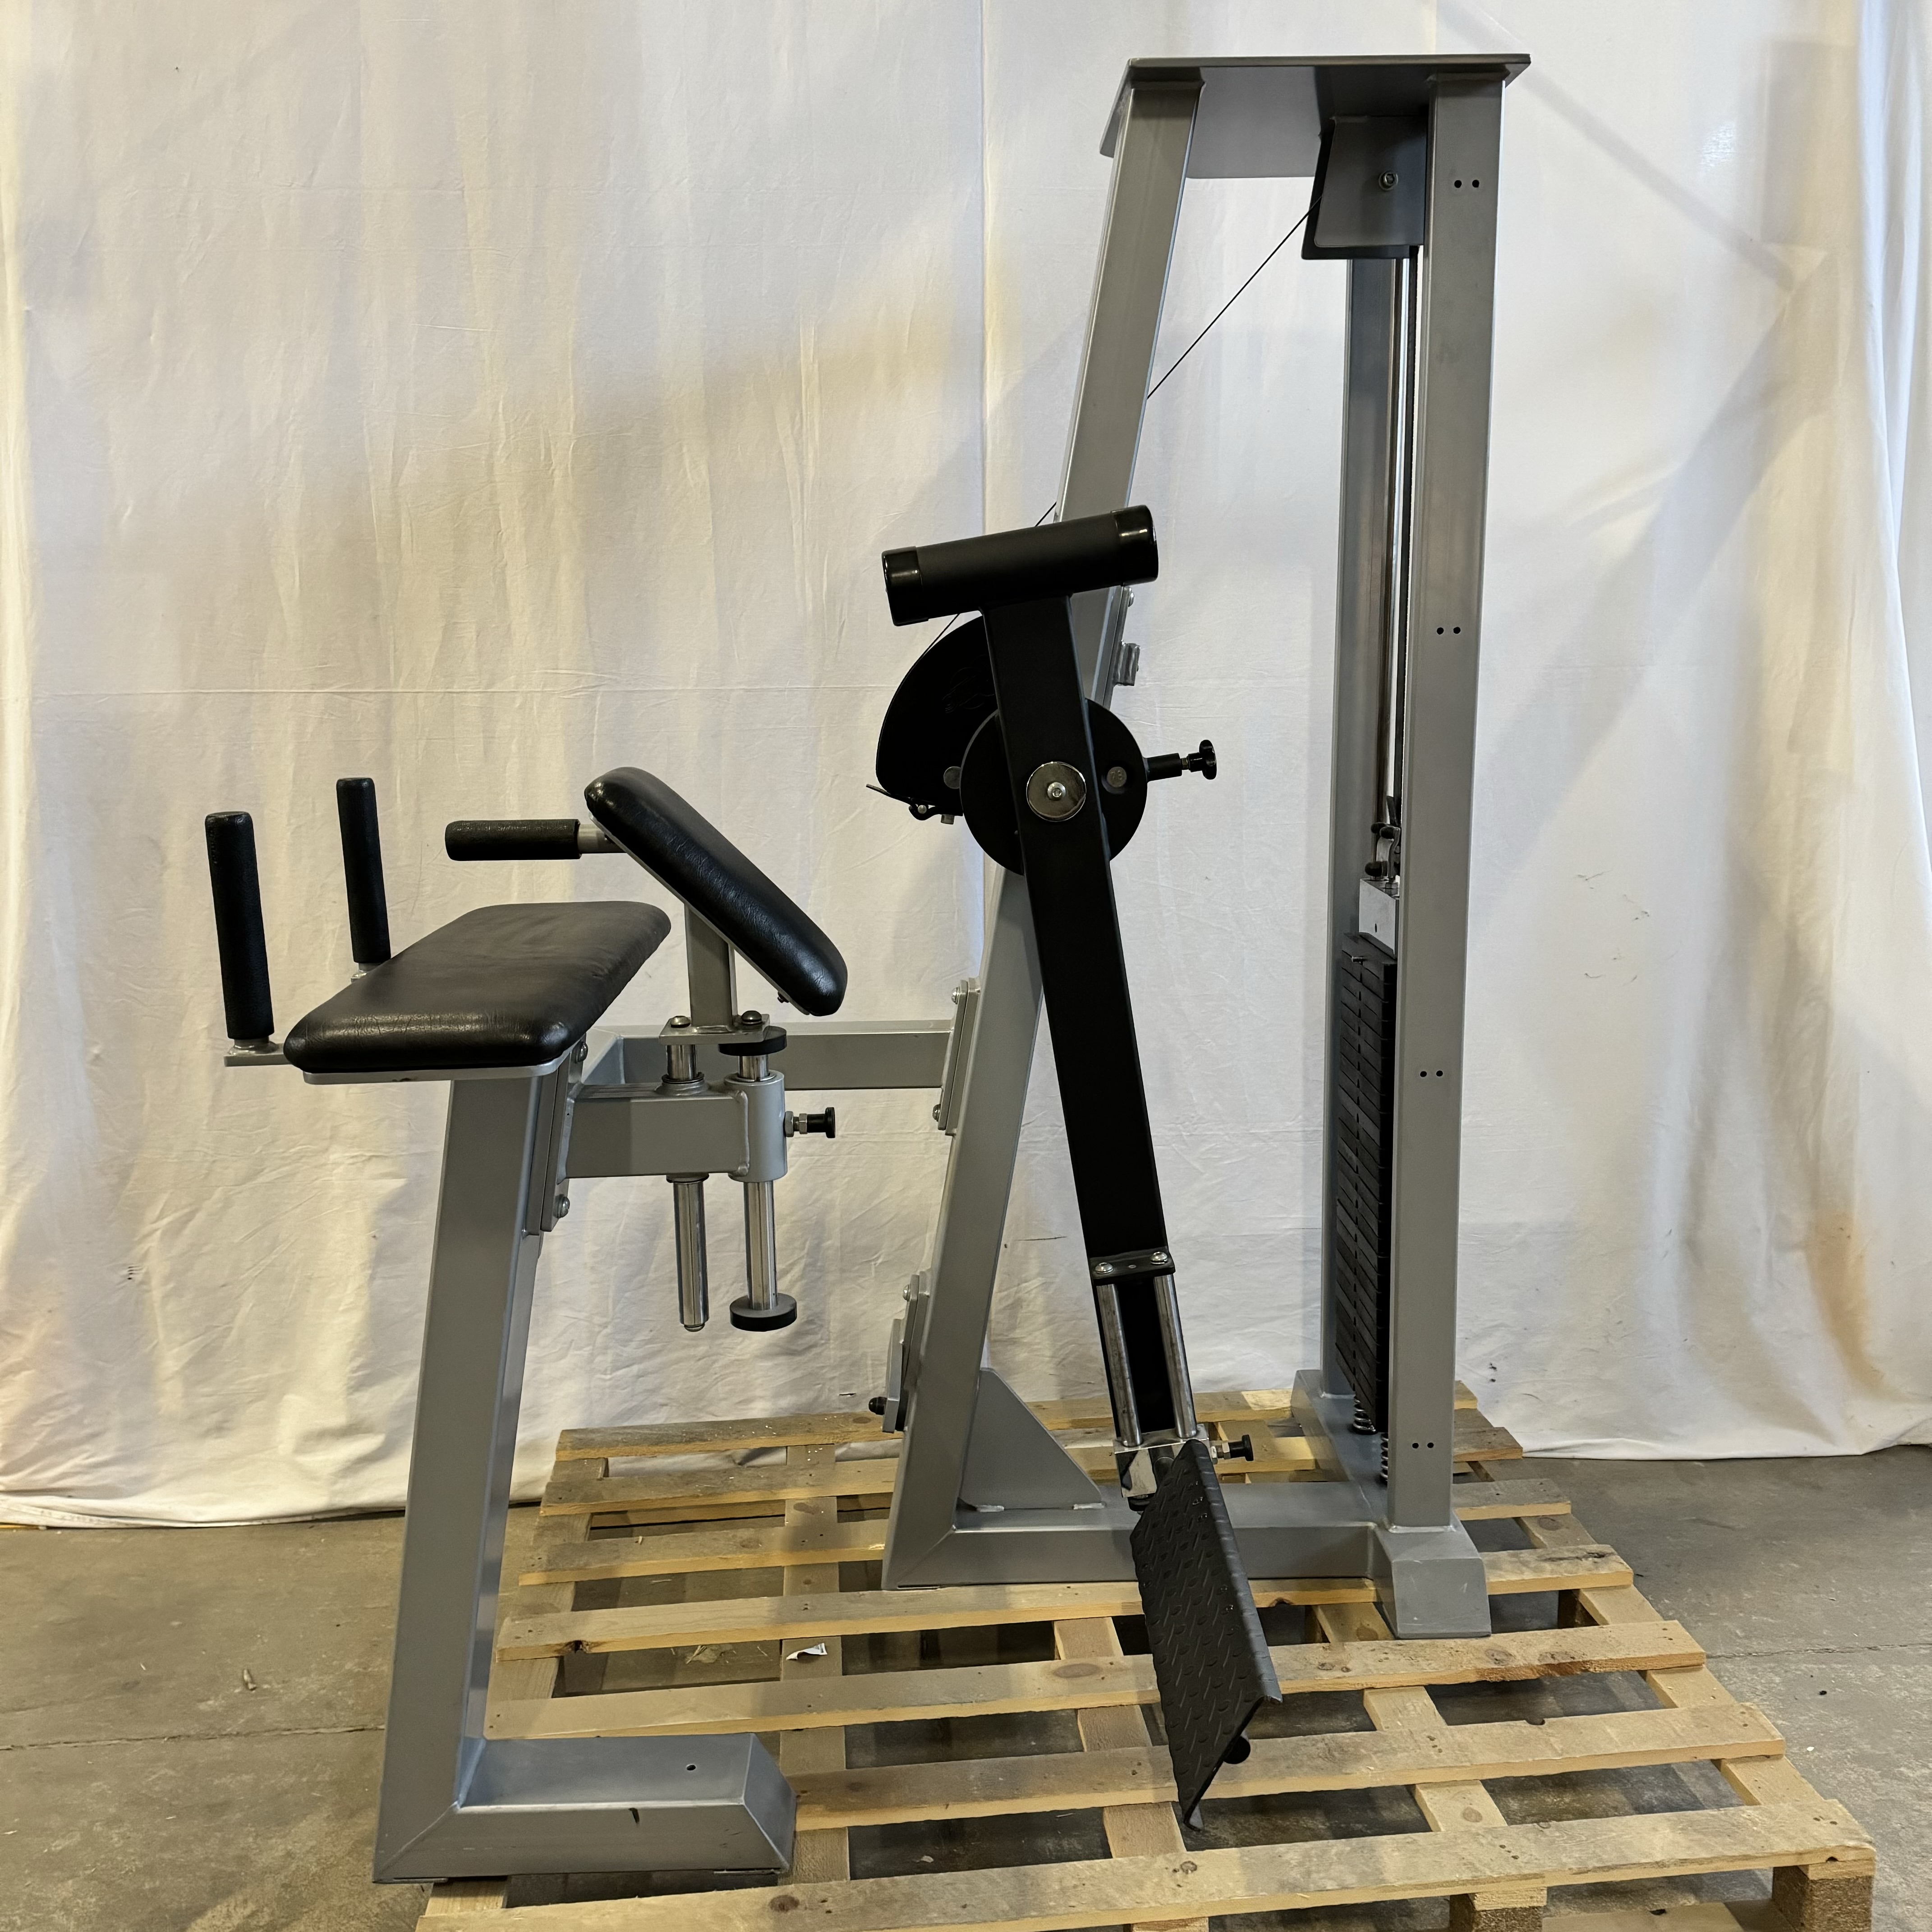 Brug gym80 Glute Kick Machine - Brugt til en forbedret oplevelse